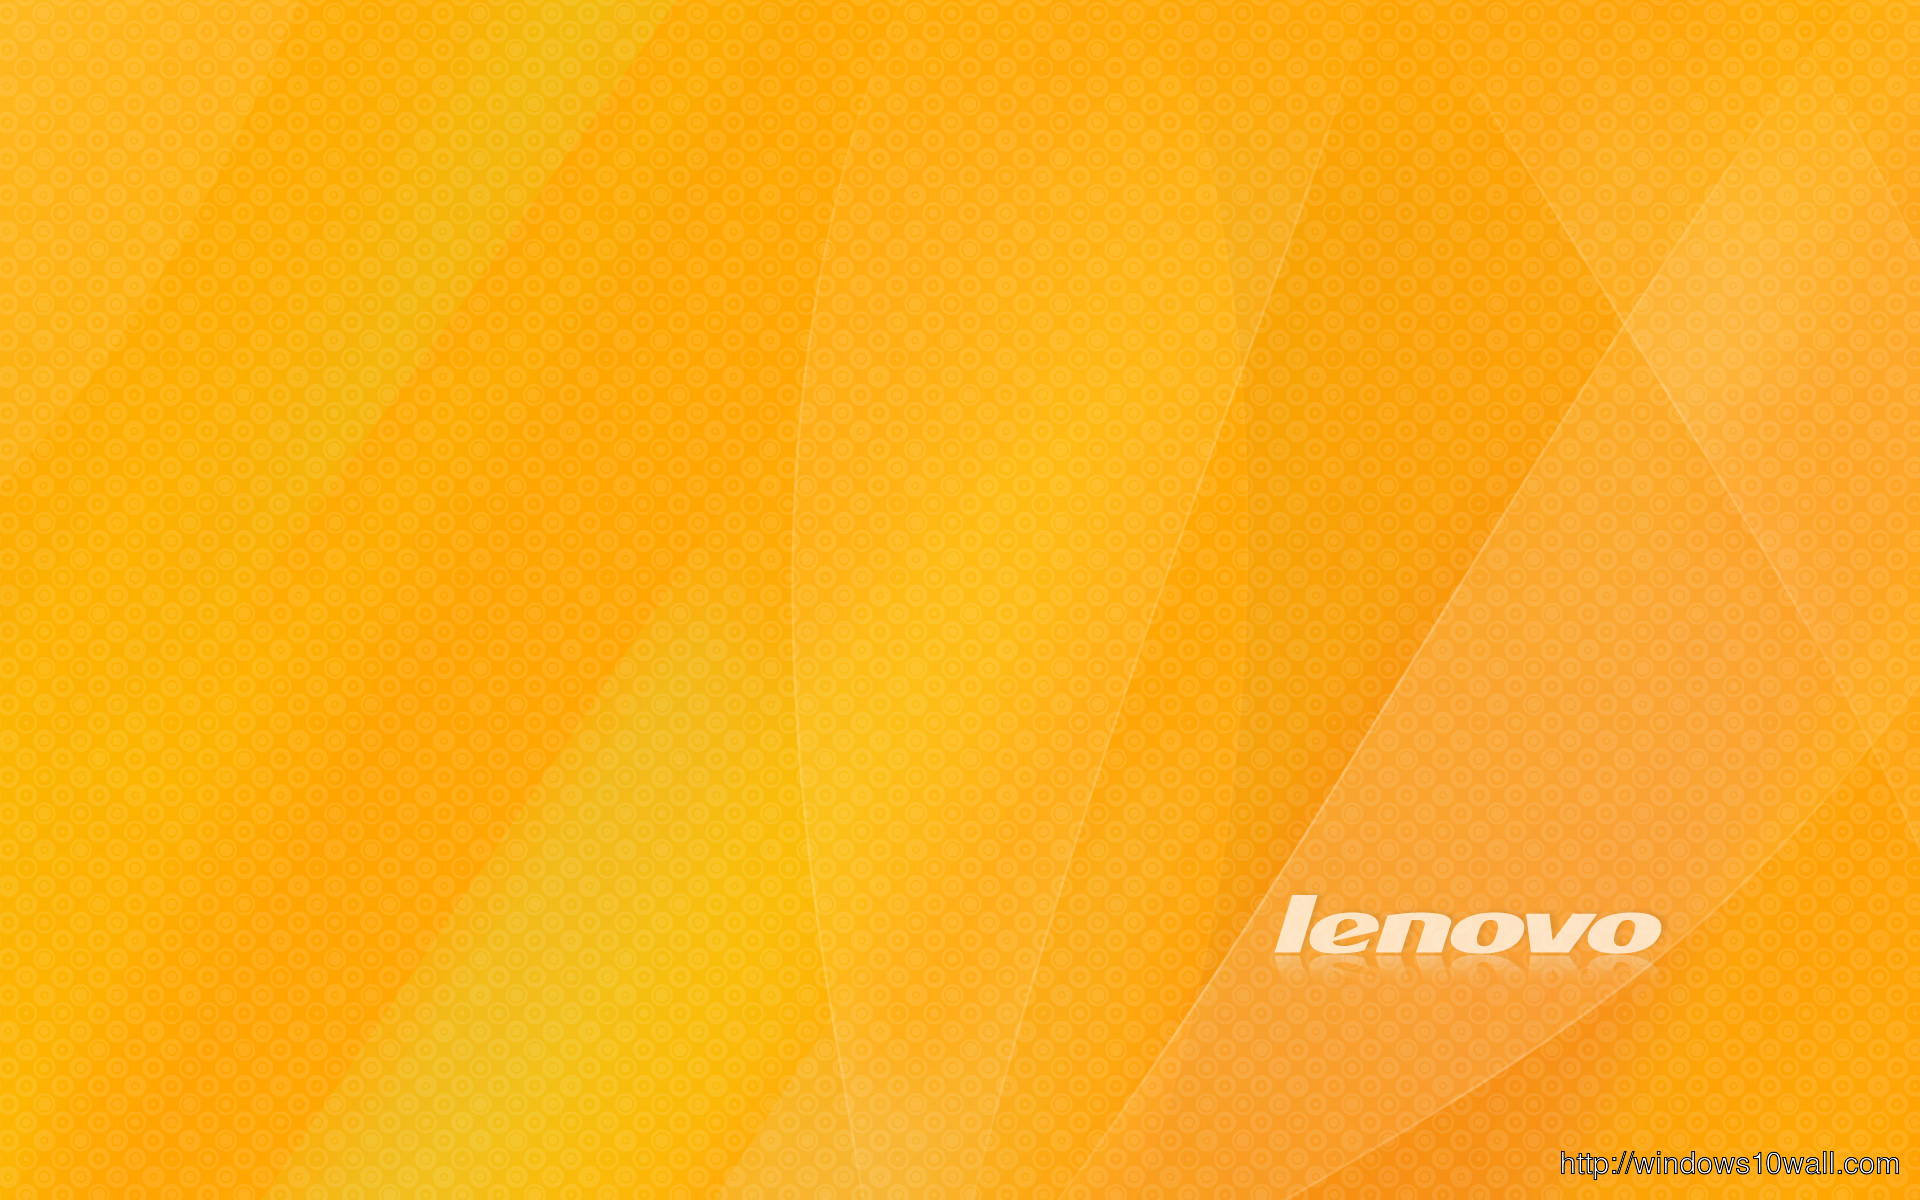 Lenovo Background Wallpapers - Lenovo - 1920x1200 Wallpaper 